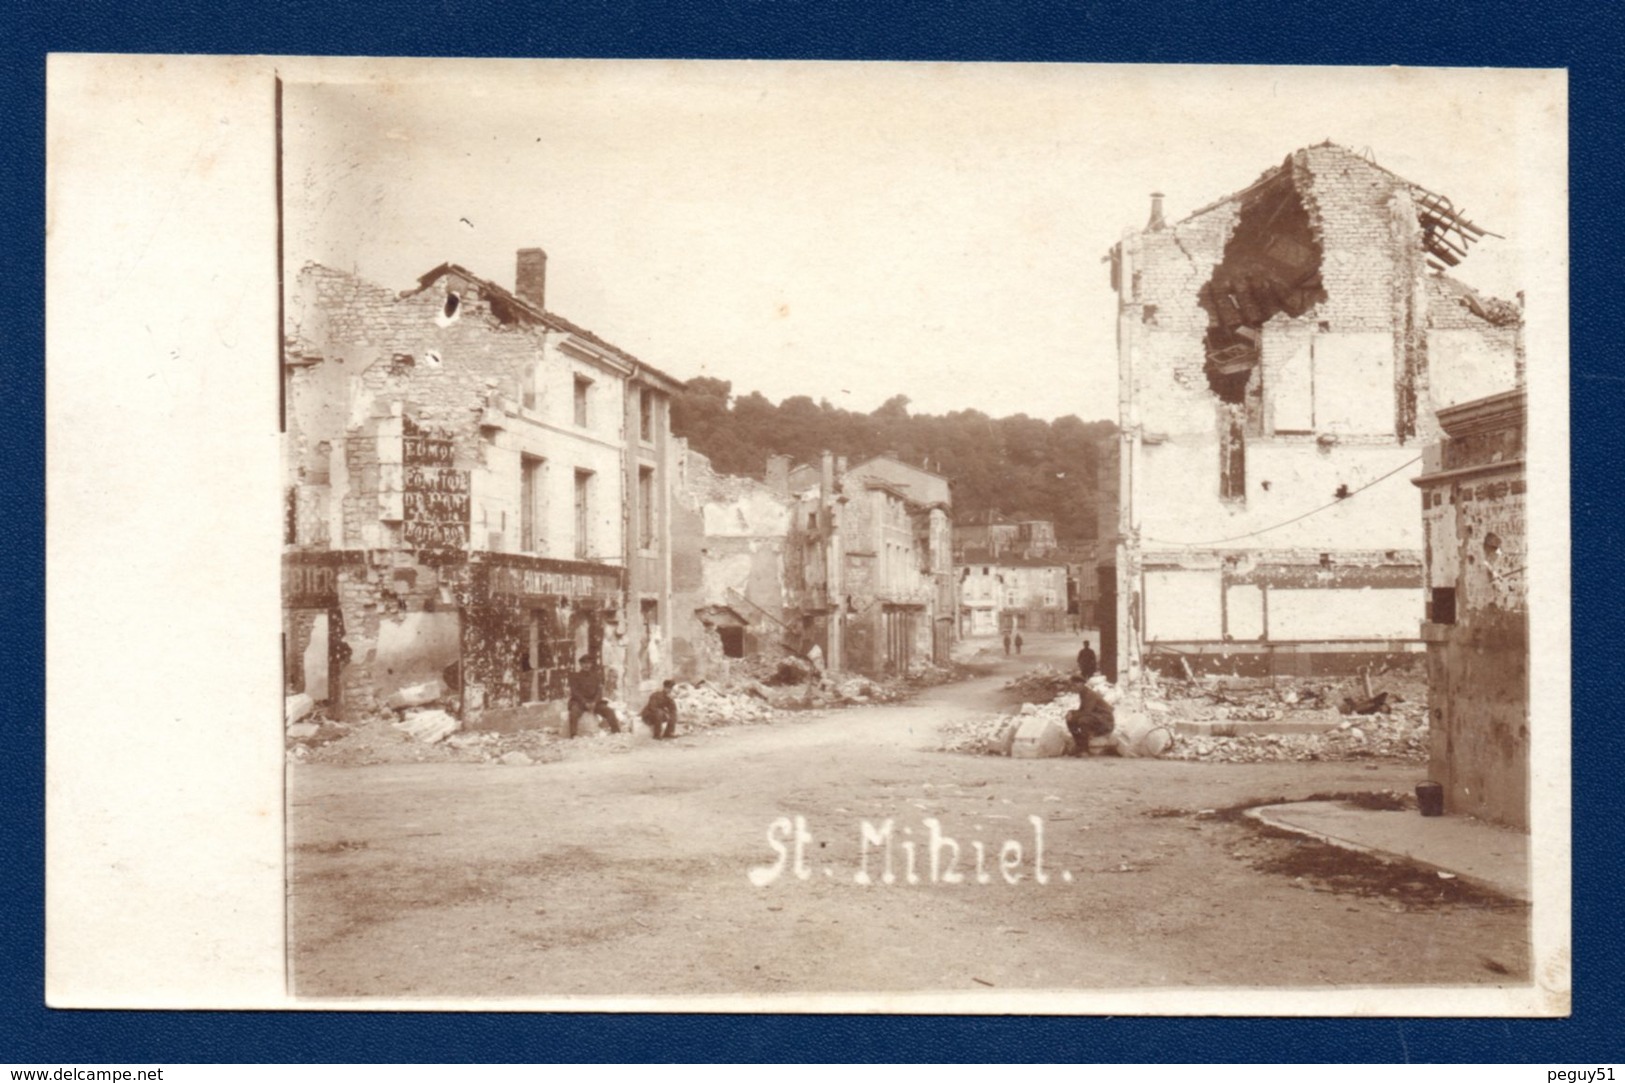 55. Saint-Mihiel. Carte-Photo. Ruines 1914-18. Soldats Allemands. Comptoir Du Pont. Coiffeur-Parfumeur - Saint Mihiel